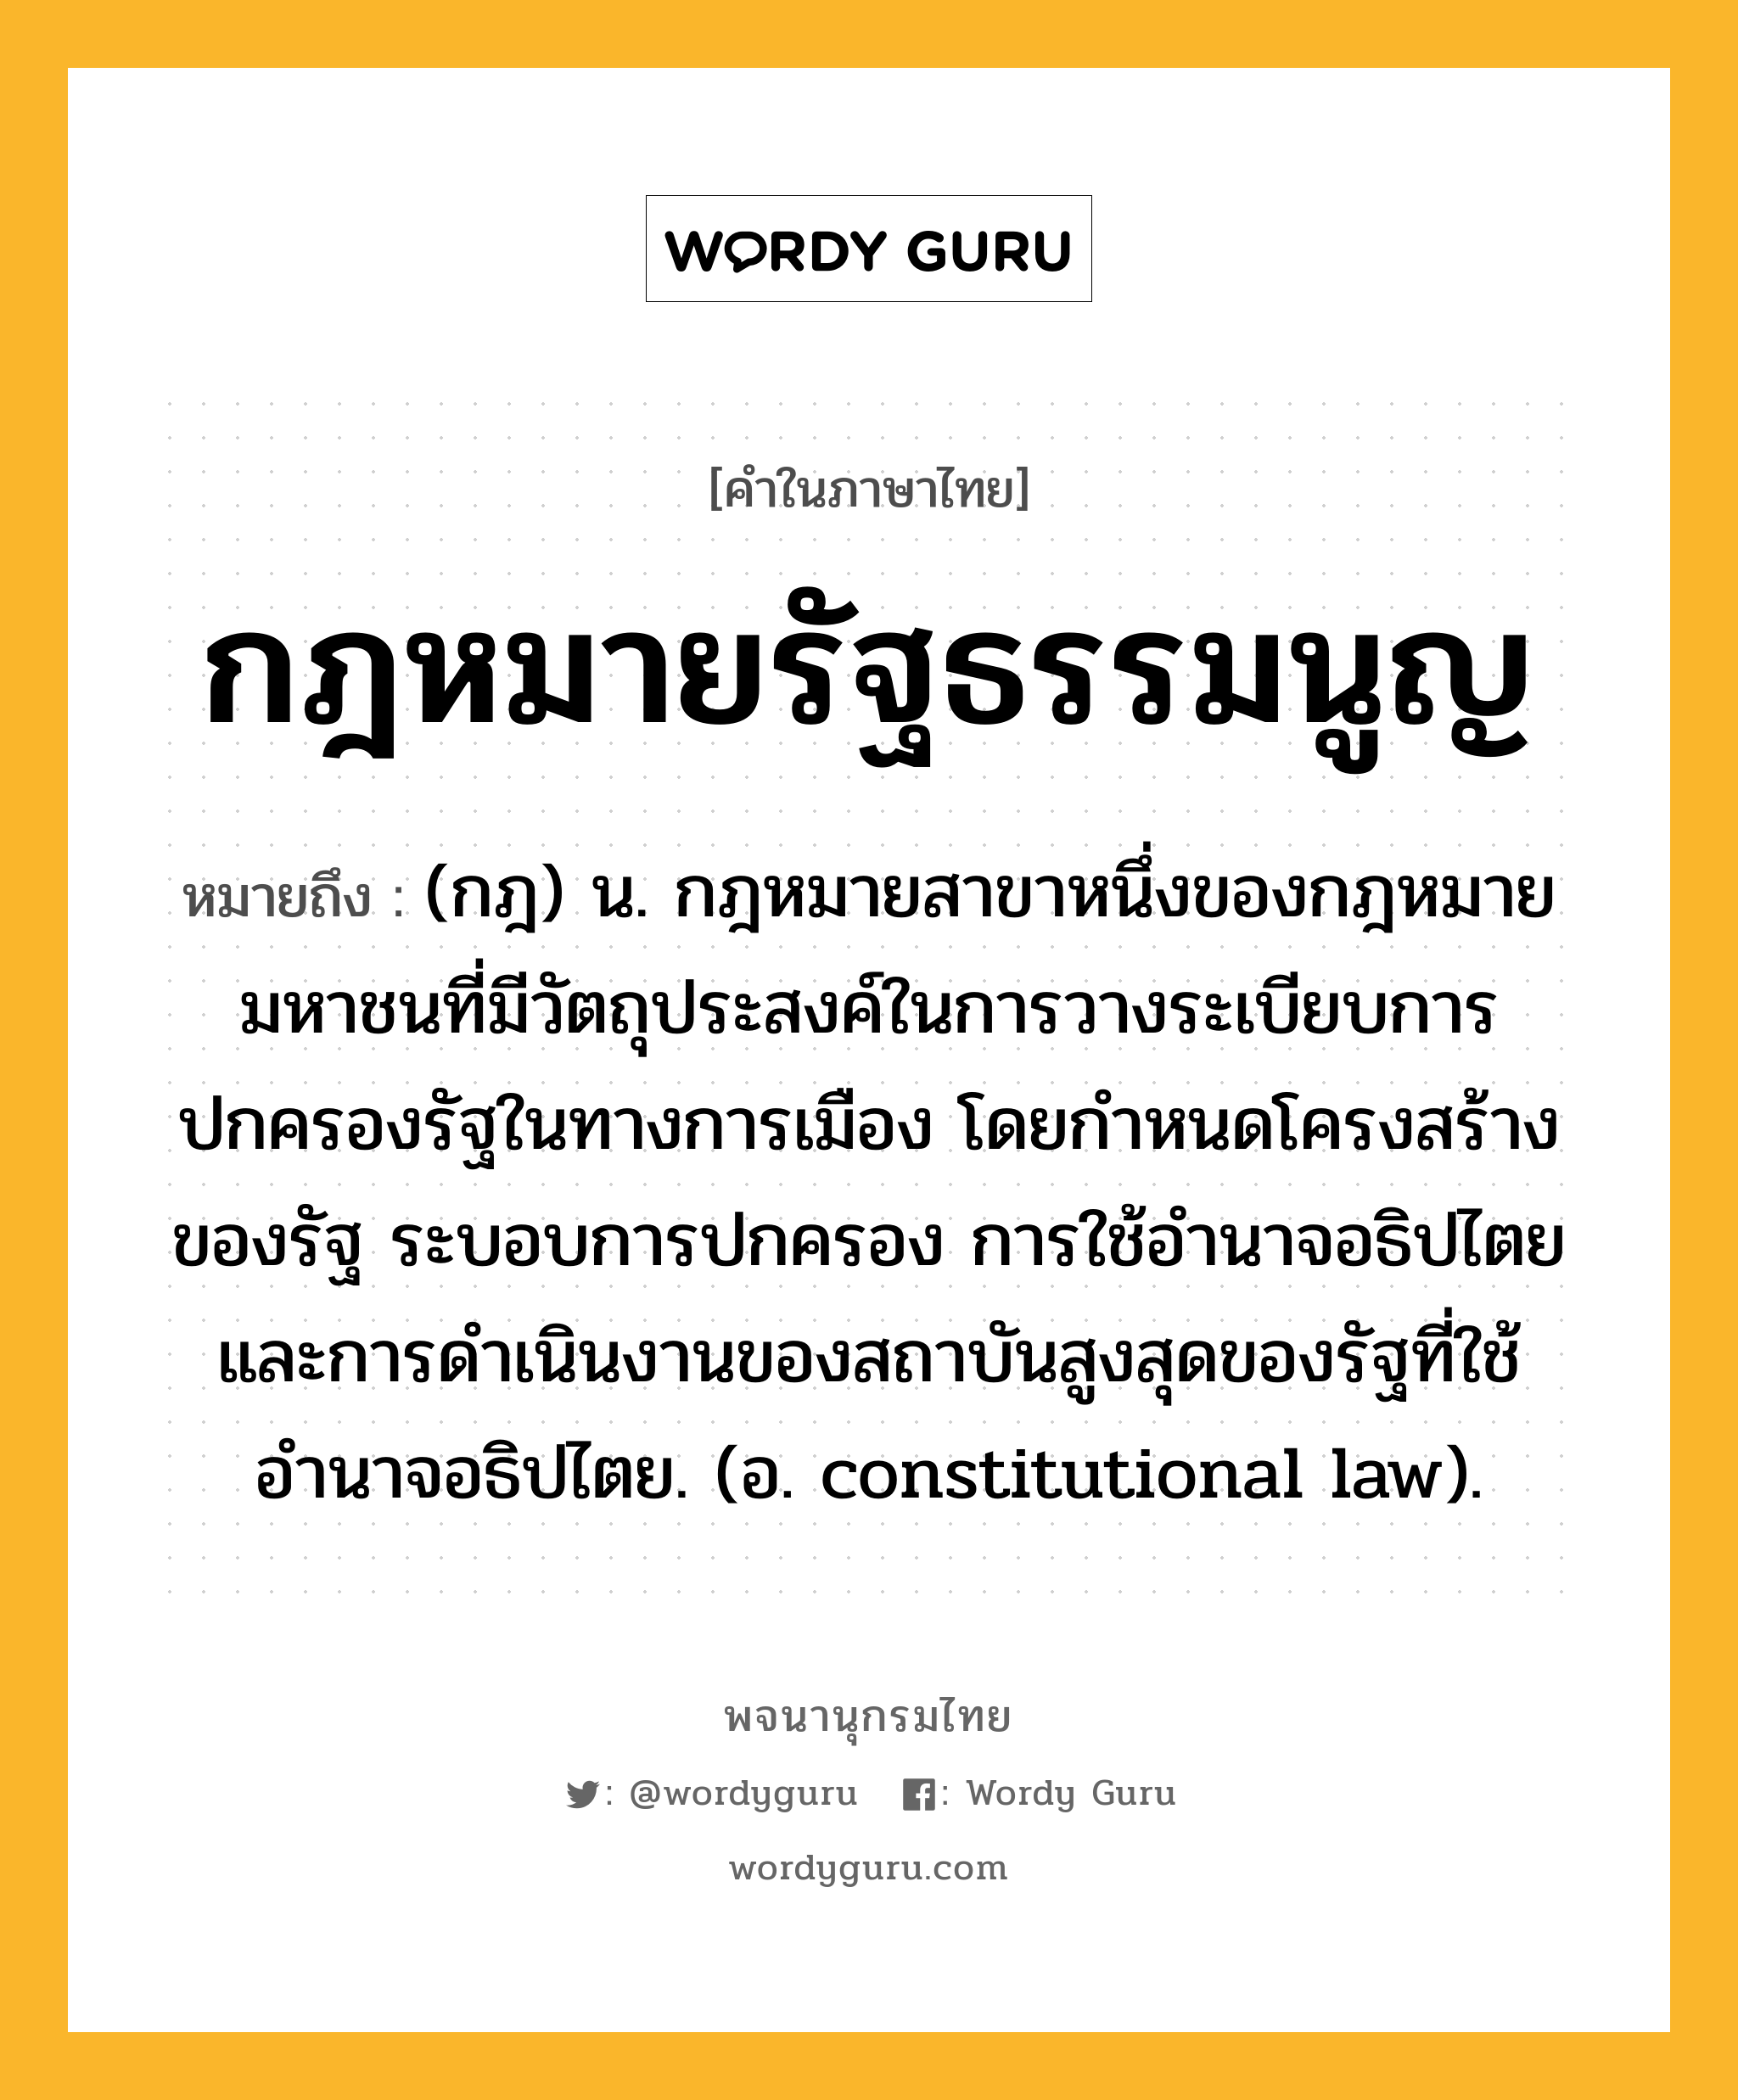 กฎหมายรัฐธรรมนูญ หมายถึงอะไร?, คำในภาษาไทย กฎหมายรัฐธรรมนูญ หมายถึง (กฎ) น. กฎหมายสาขาหนึ่งของกฎหมายมหาชนที่มีวัตถุประสงค์ในการวางระเบียบการปกครองรัฐในทางการเมือง โดยกำหนดโครงสร้างของรัฐ ระบอบการปกครอง การใช้อำนาจอธิปไตยและการดำเนินงานของสถาบันสูงสุดของรัฐที่ใช้อำนาจอธิปไตย. (อ. constitutional law).